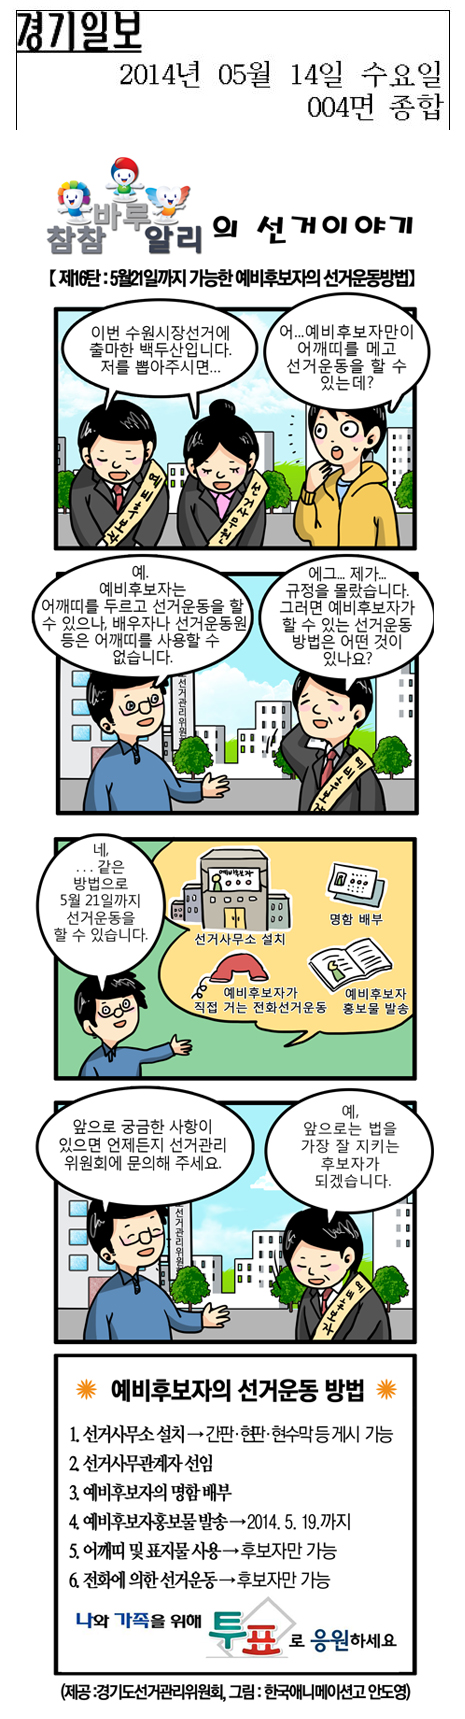 '참참·바루·알리'의 선거이야기 만화 16화